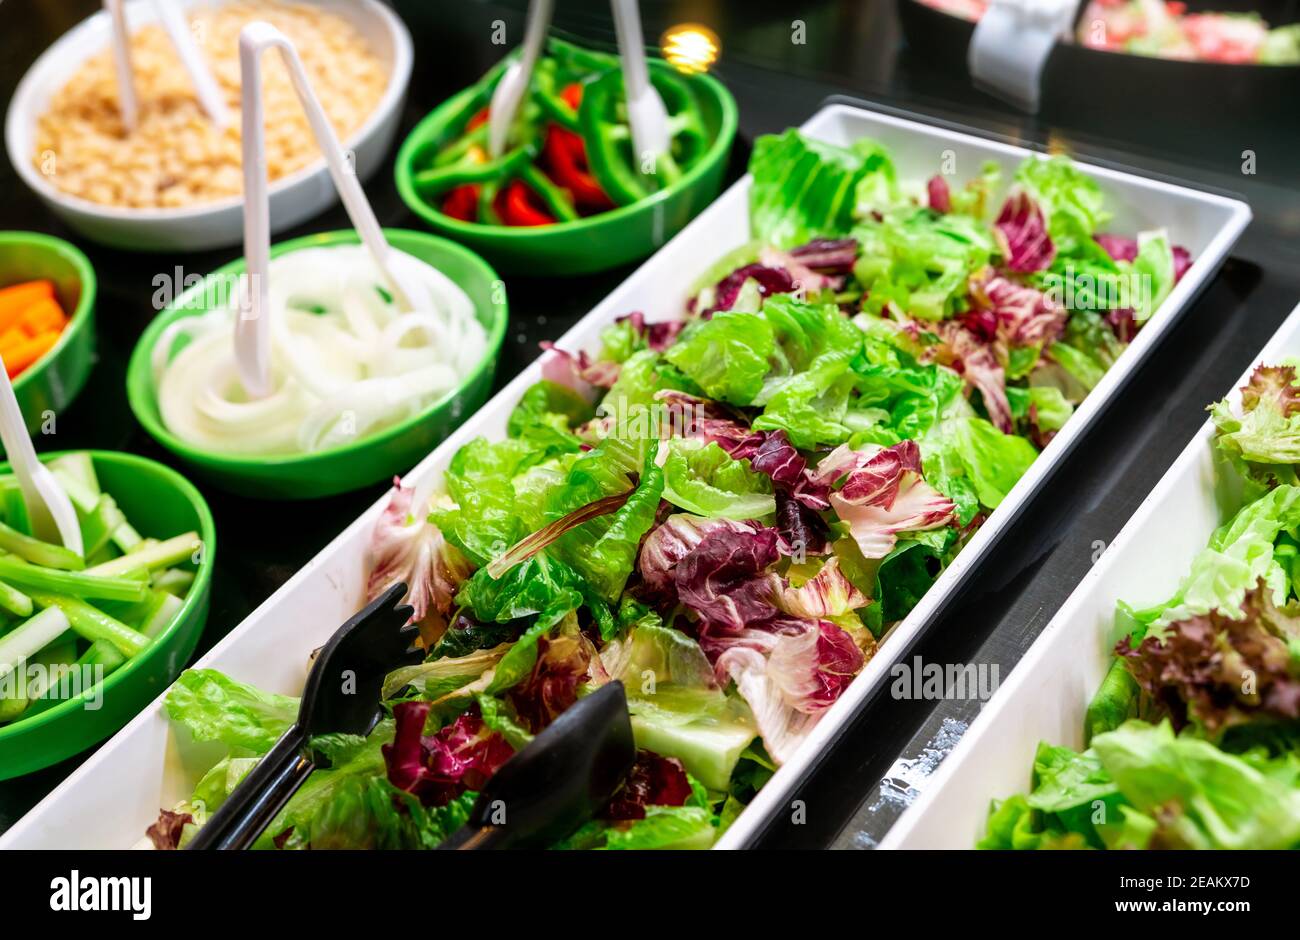 Buffet de salades au restaurant. Buffet de salades fraîches pour le déjeuner ou le dîner. Une alimentation saine. Laitue verte et violette fraîche dans une assiette blanche sur le comptoir. Restauration. Service de banquet. Plats végétariens. Banque D'Images